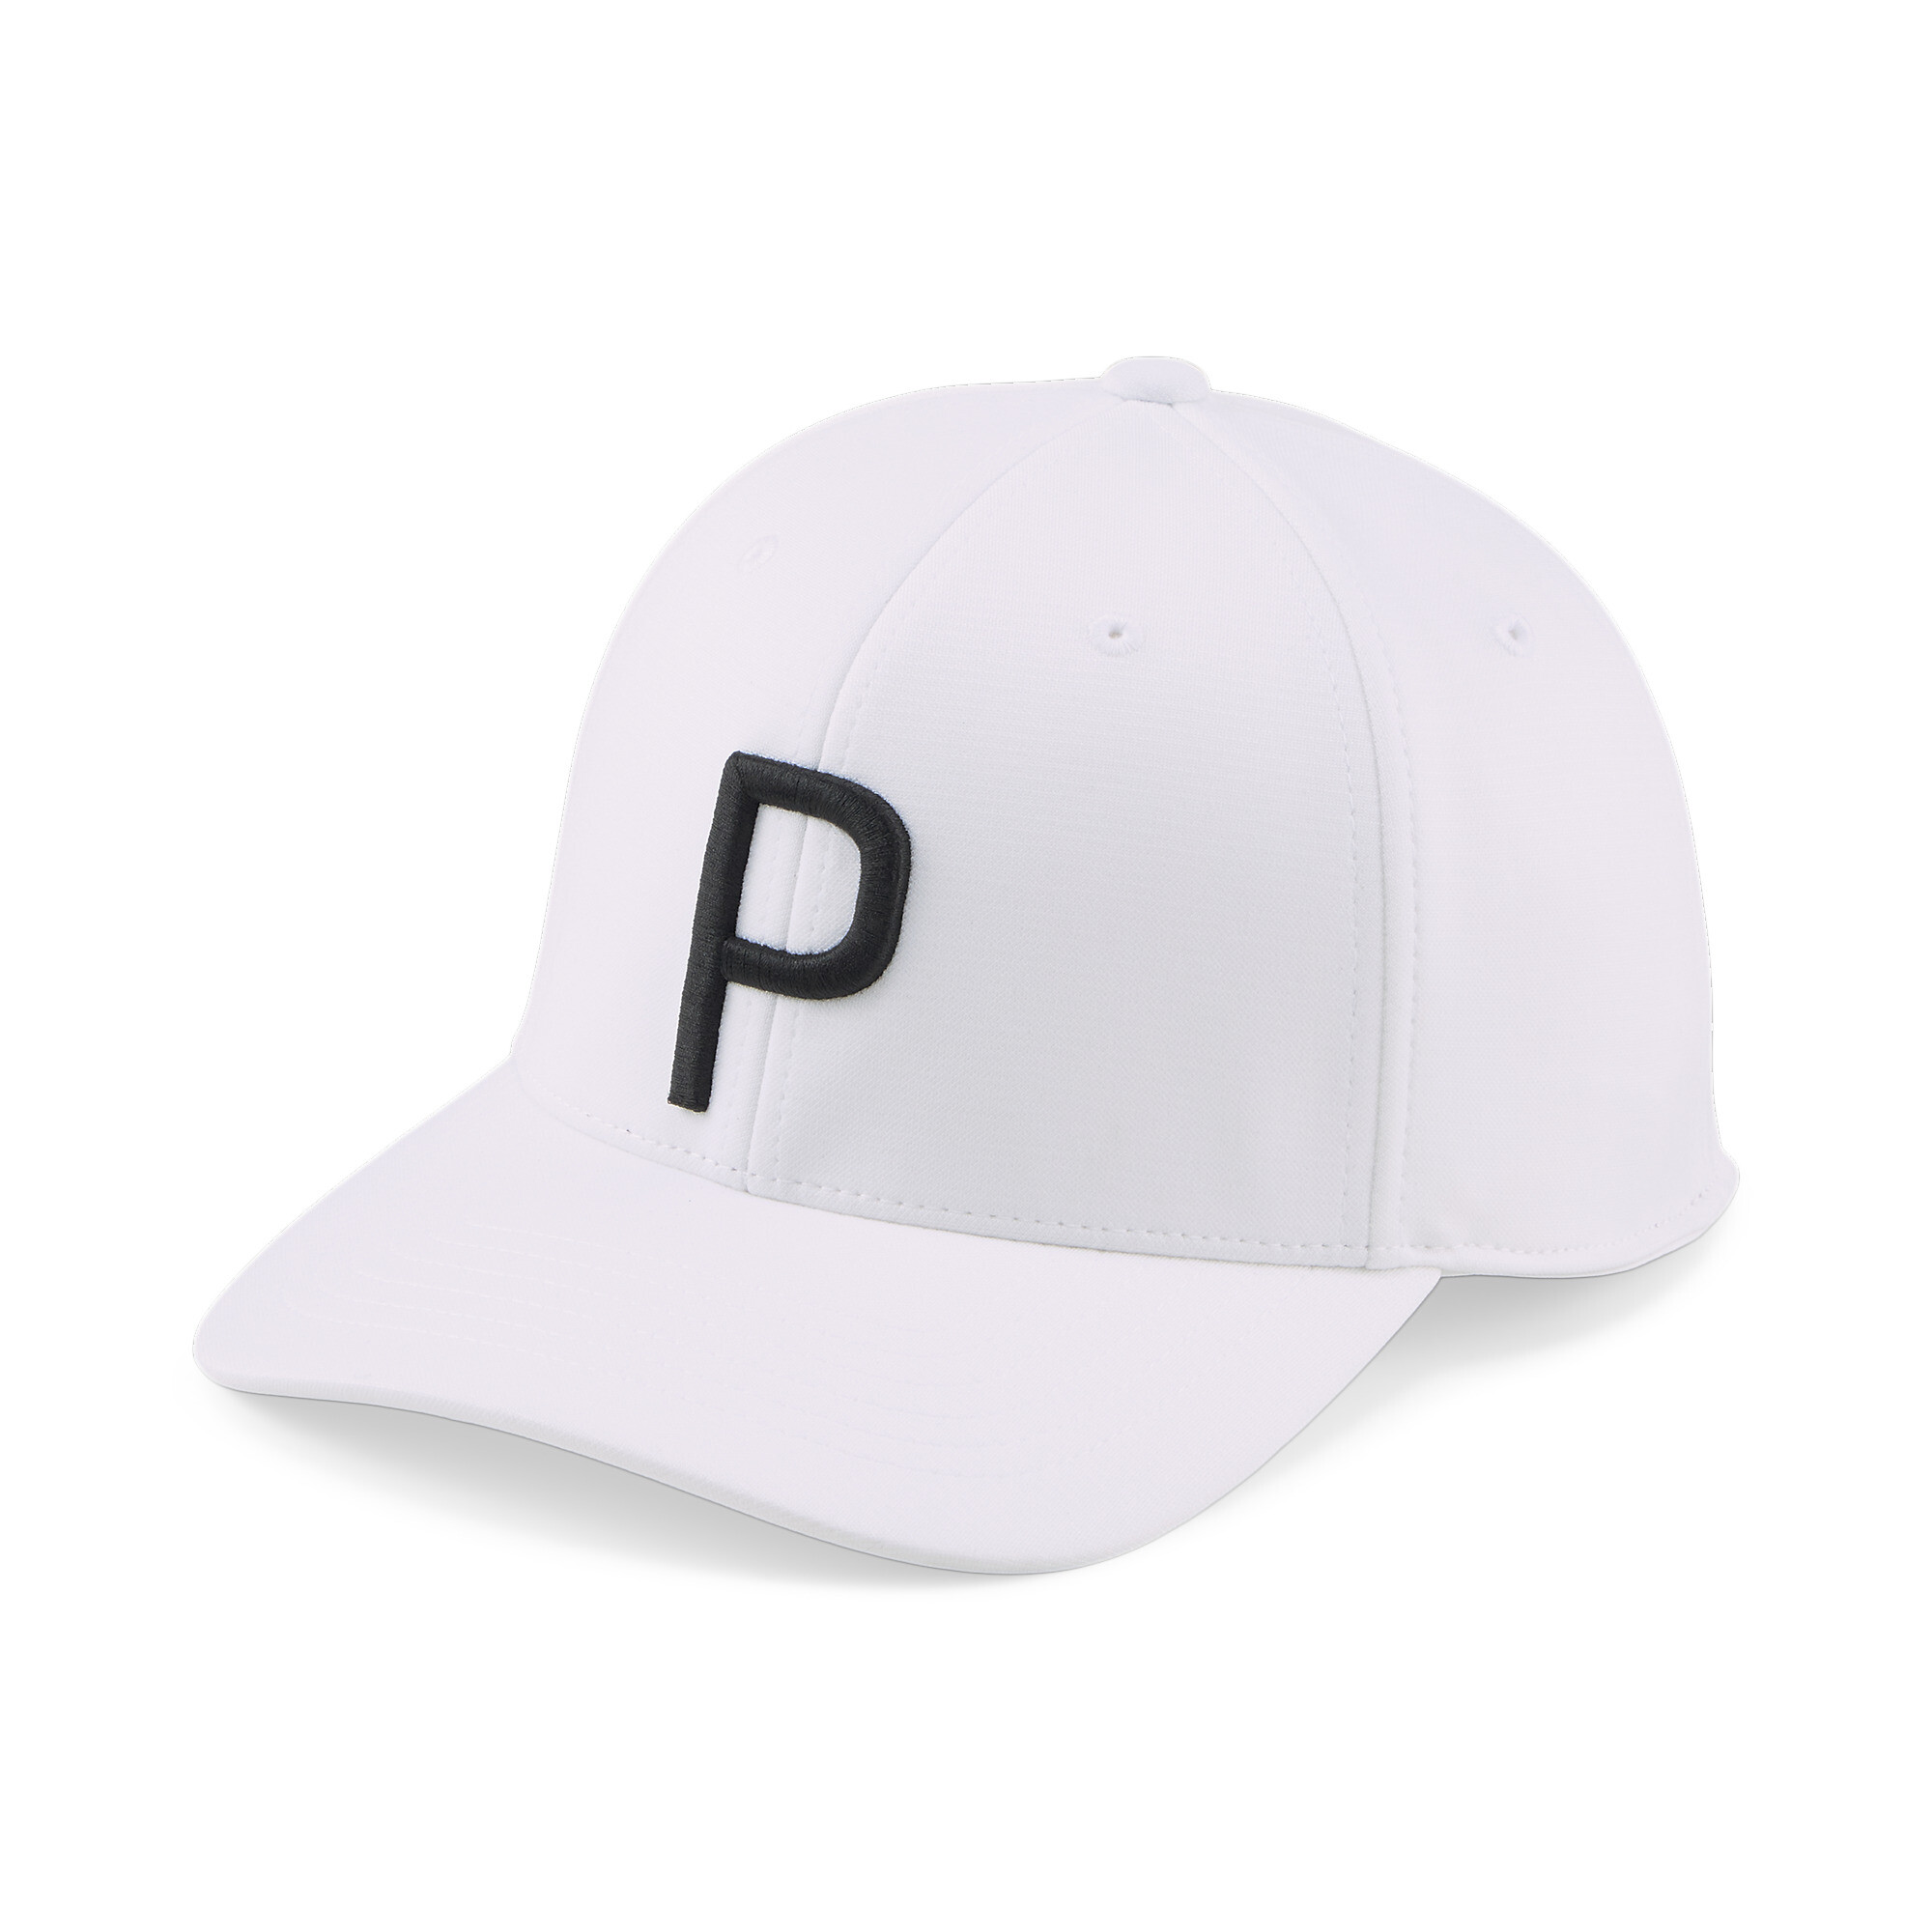  プーマ メンズ ゴルフ P キャップ メンズ White Glow-PUMA Black ｜PUMA.com